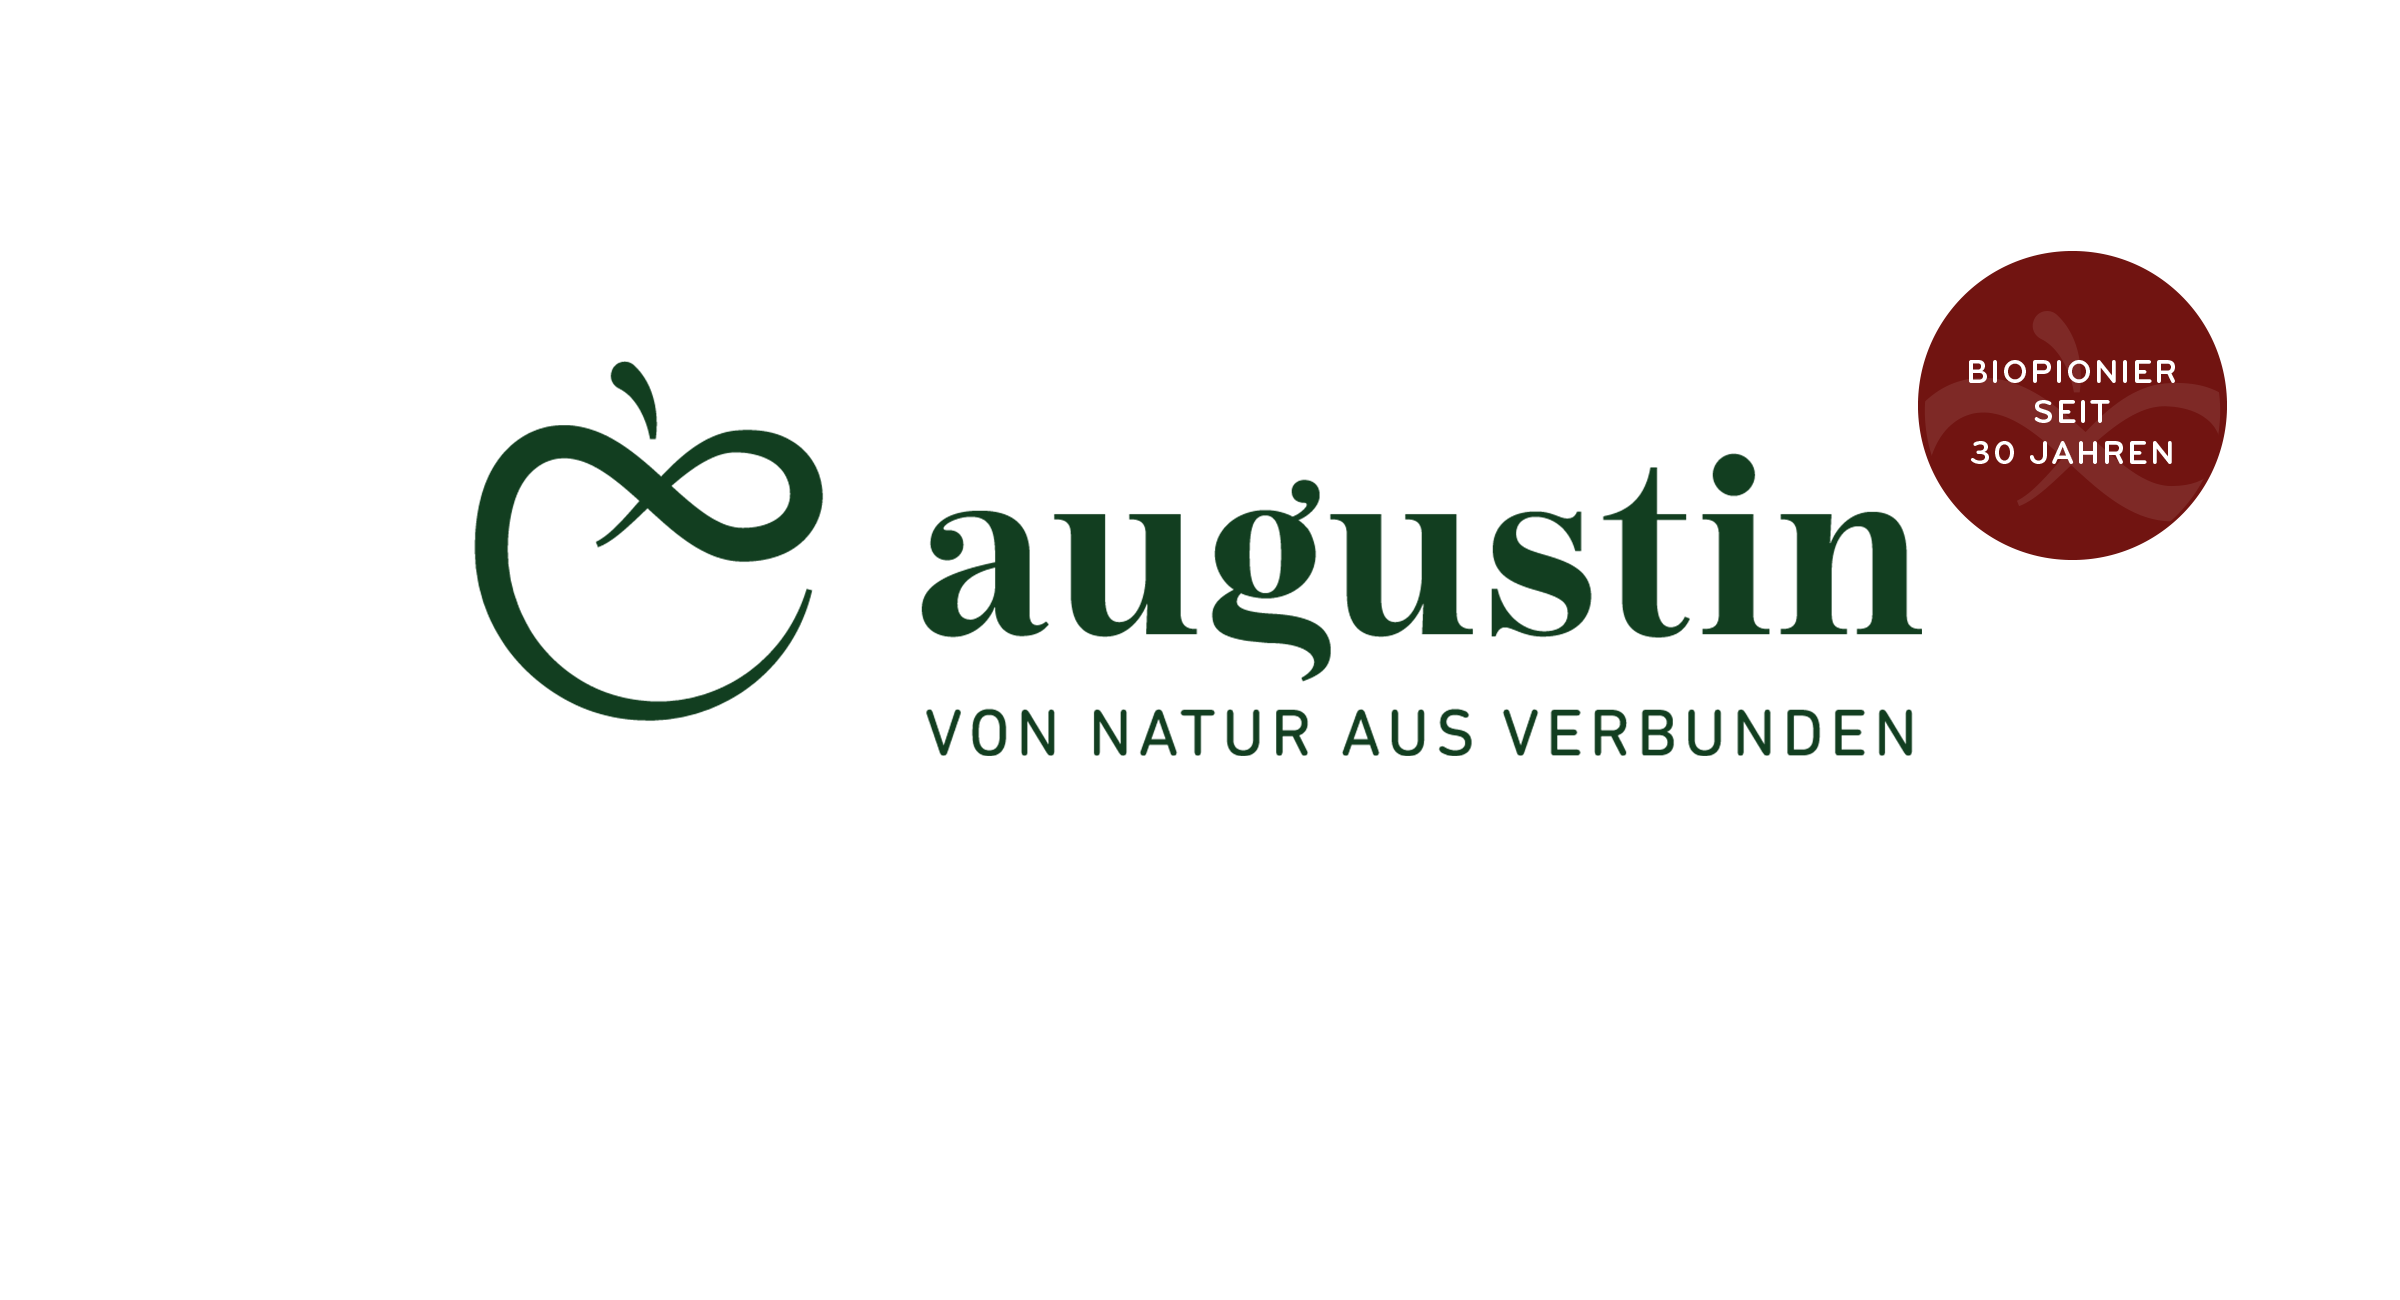 Augustin-Biopionier